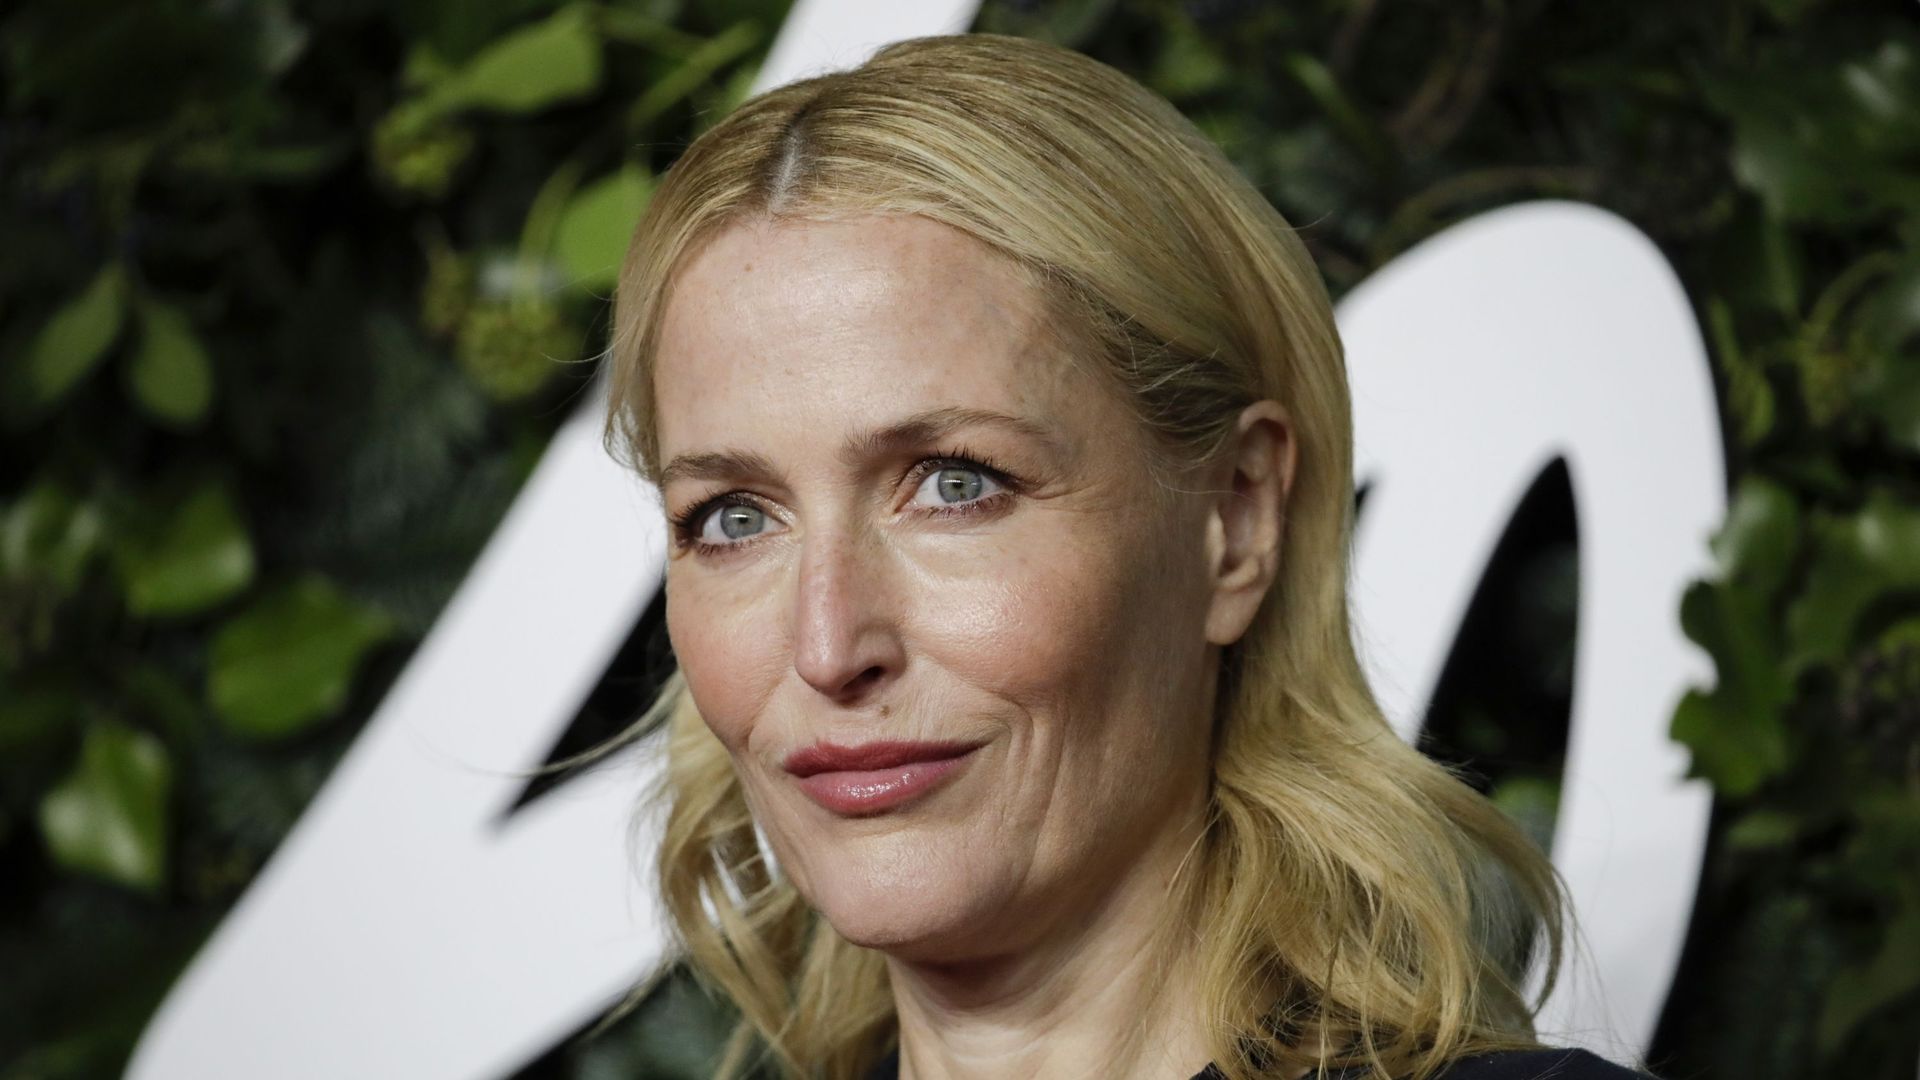 Le festival Canneseries déroule ce vendredi son tapis rose à une flopée de célébrités, de l’actrice Gillian Anderson (X-Files) au chanteur Soprano, pour une 5e saison "exigeante" et "populaire".